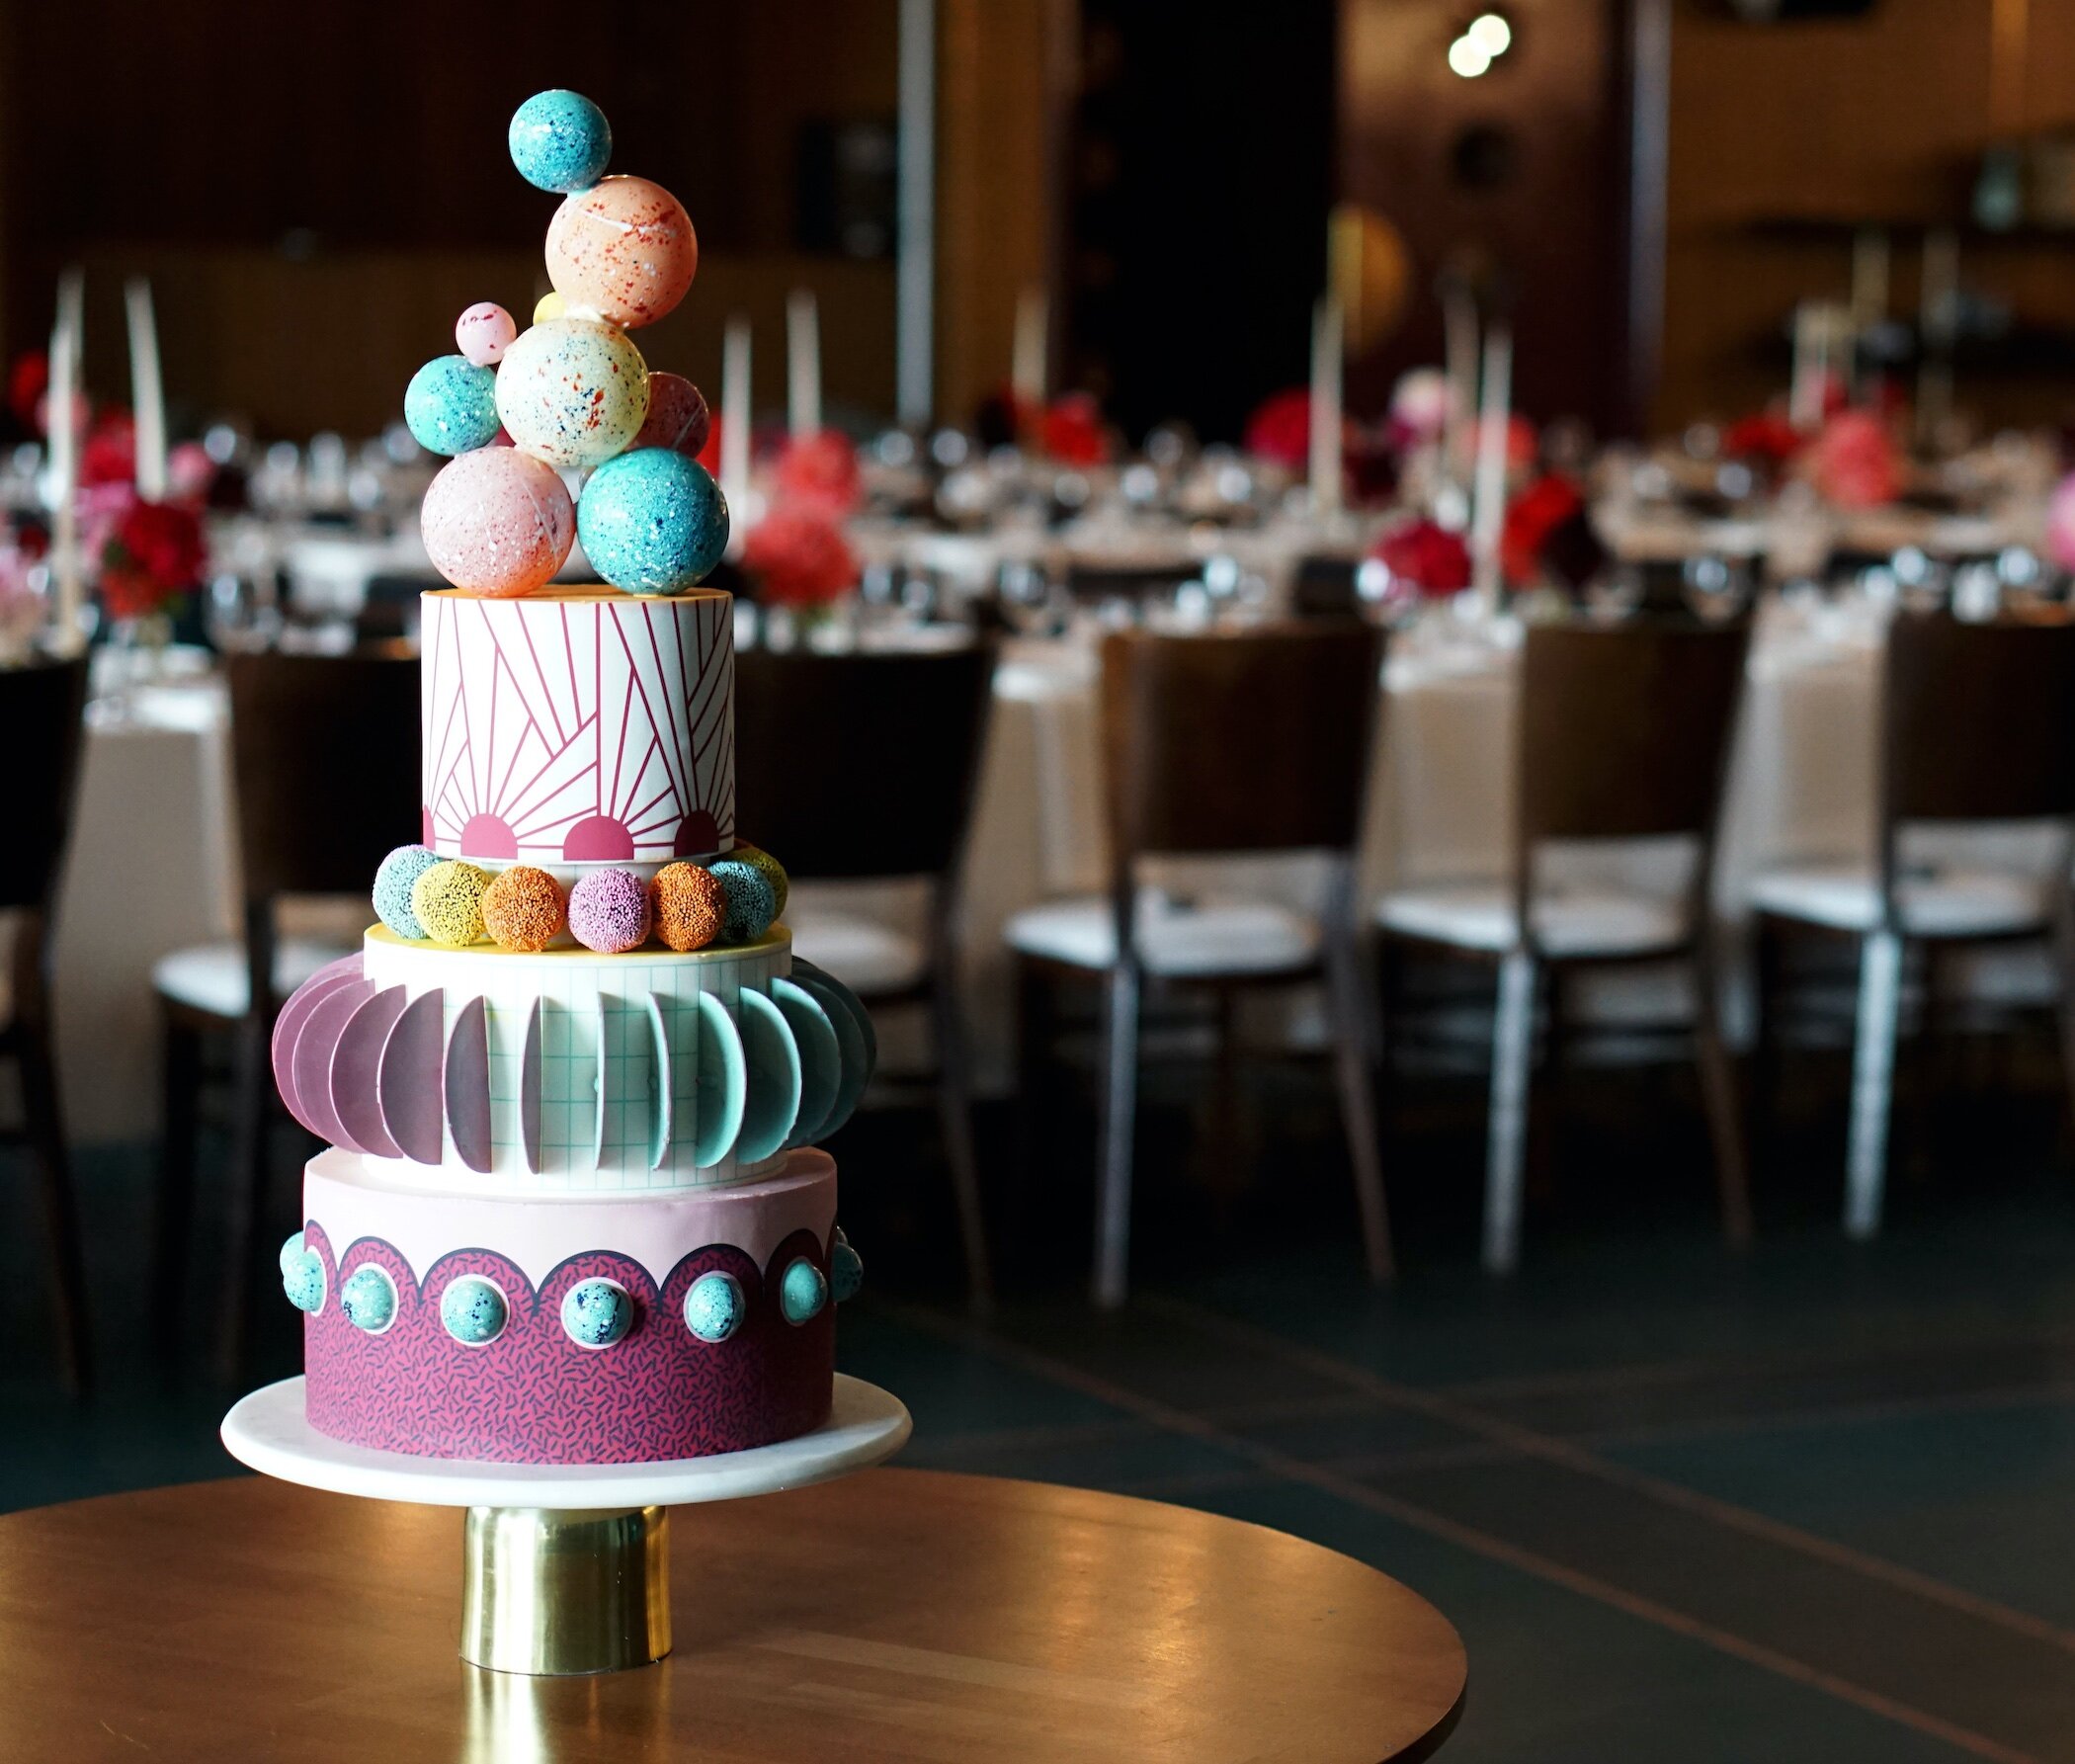 ARD Bakery wedding cake scene 2100x1785.jpg